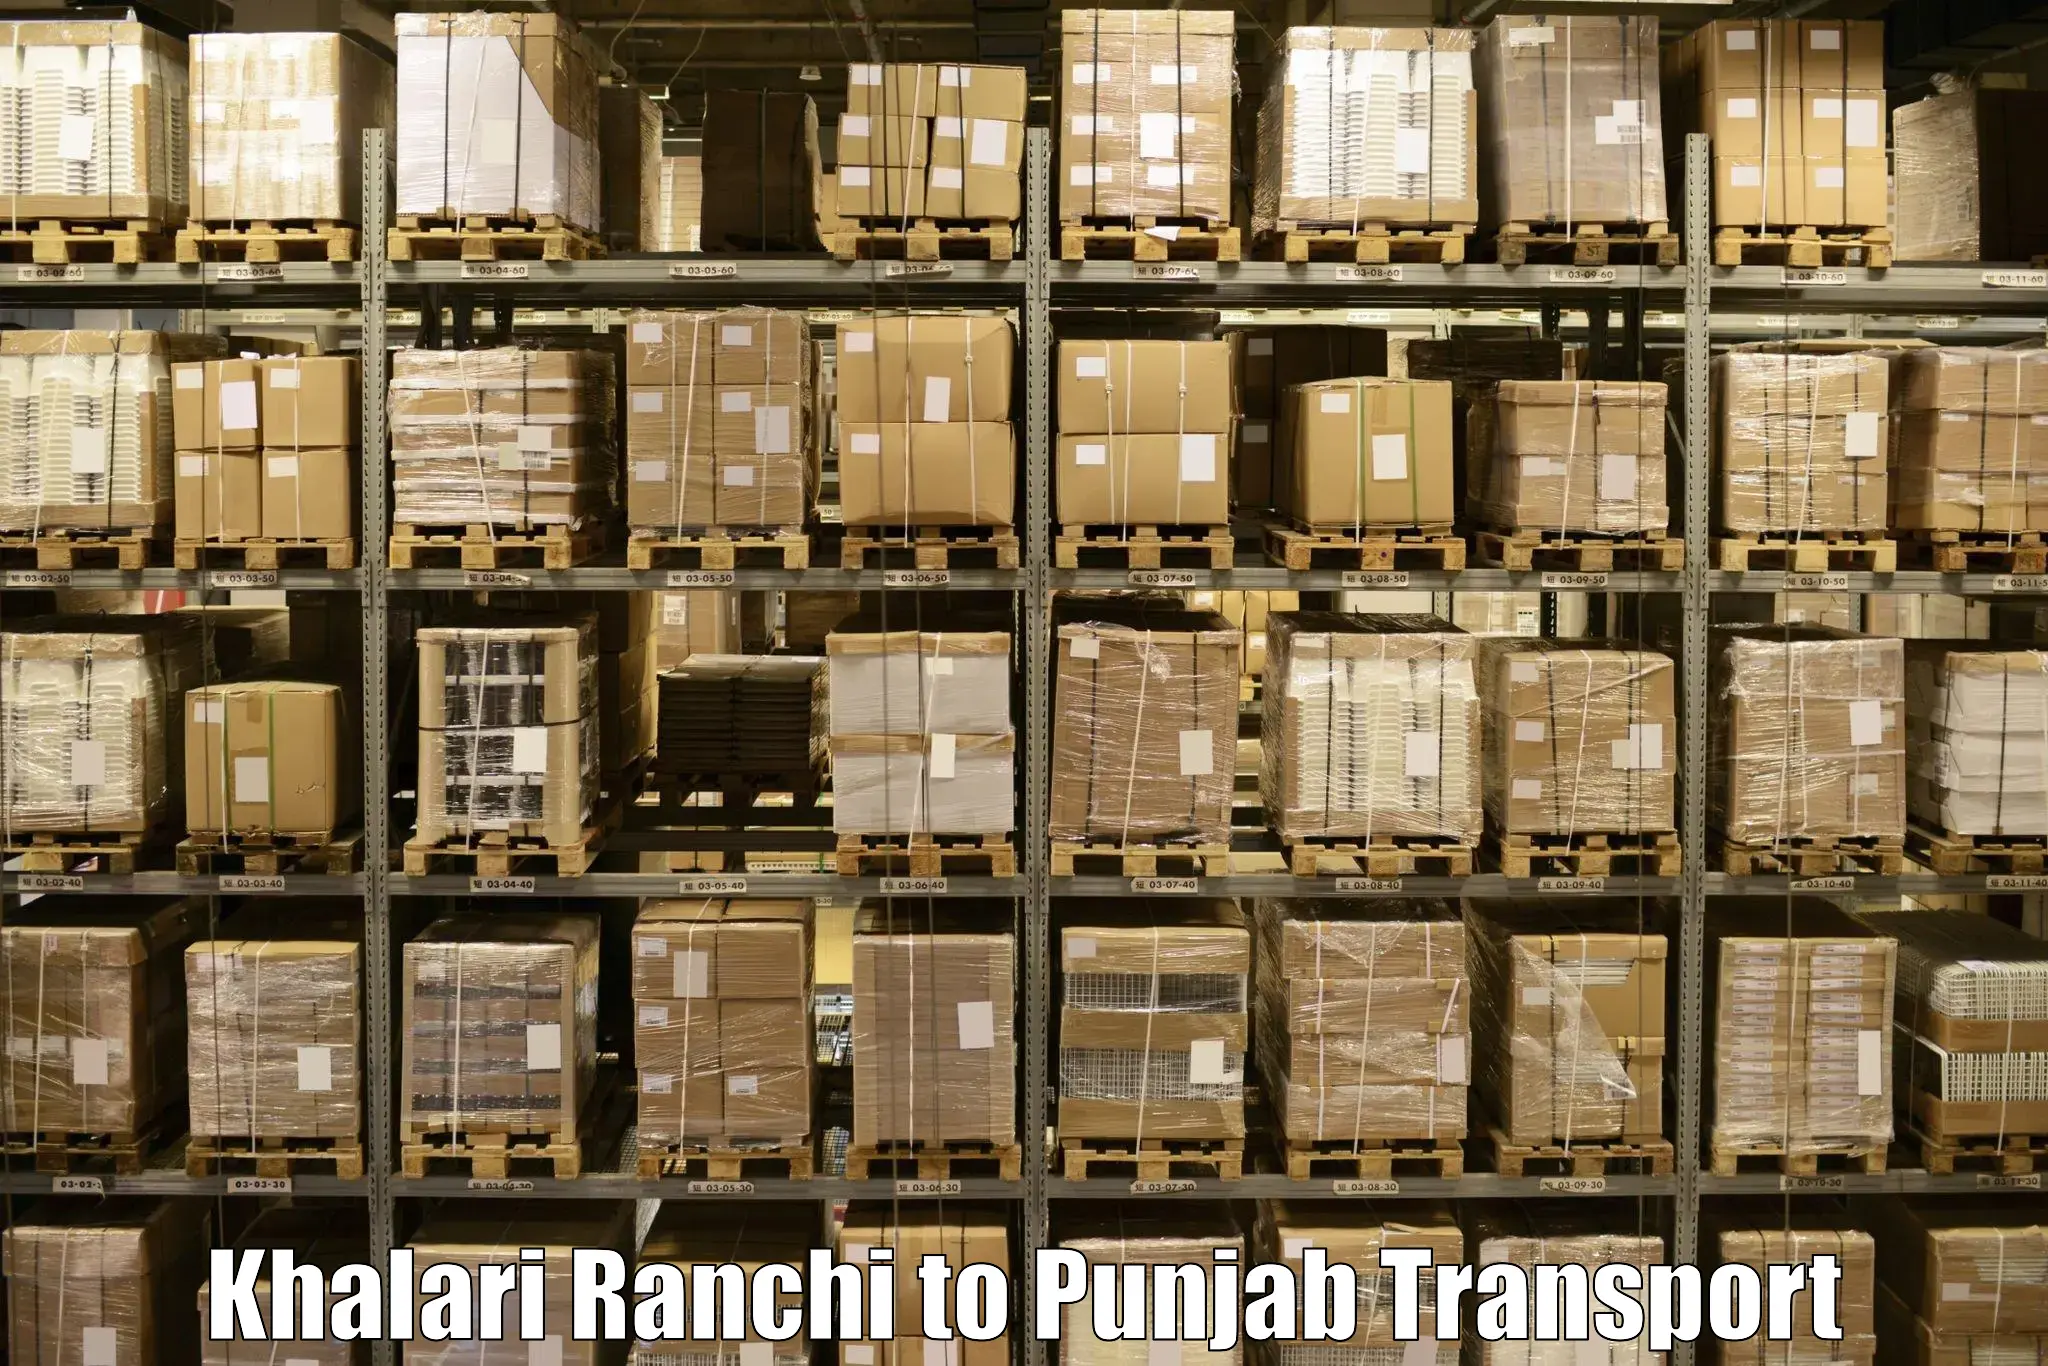 Inland transportation services in Khalari Ranchi to Nawanshahr